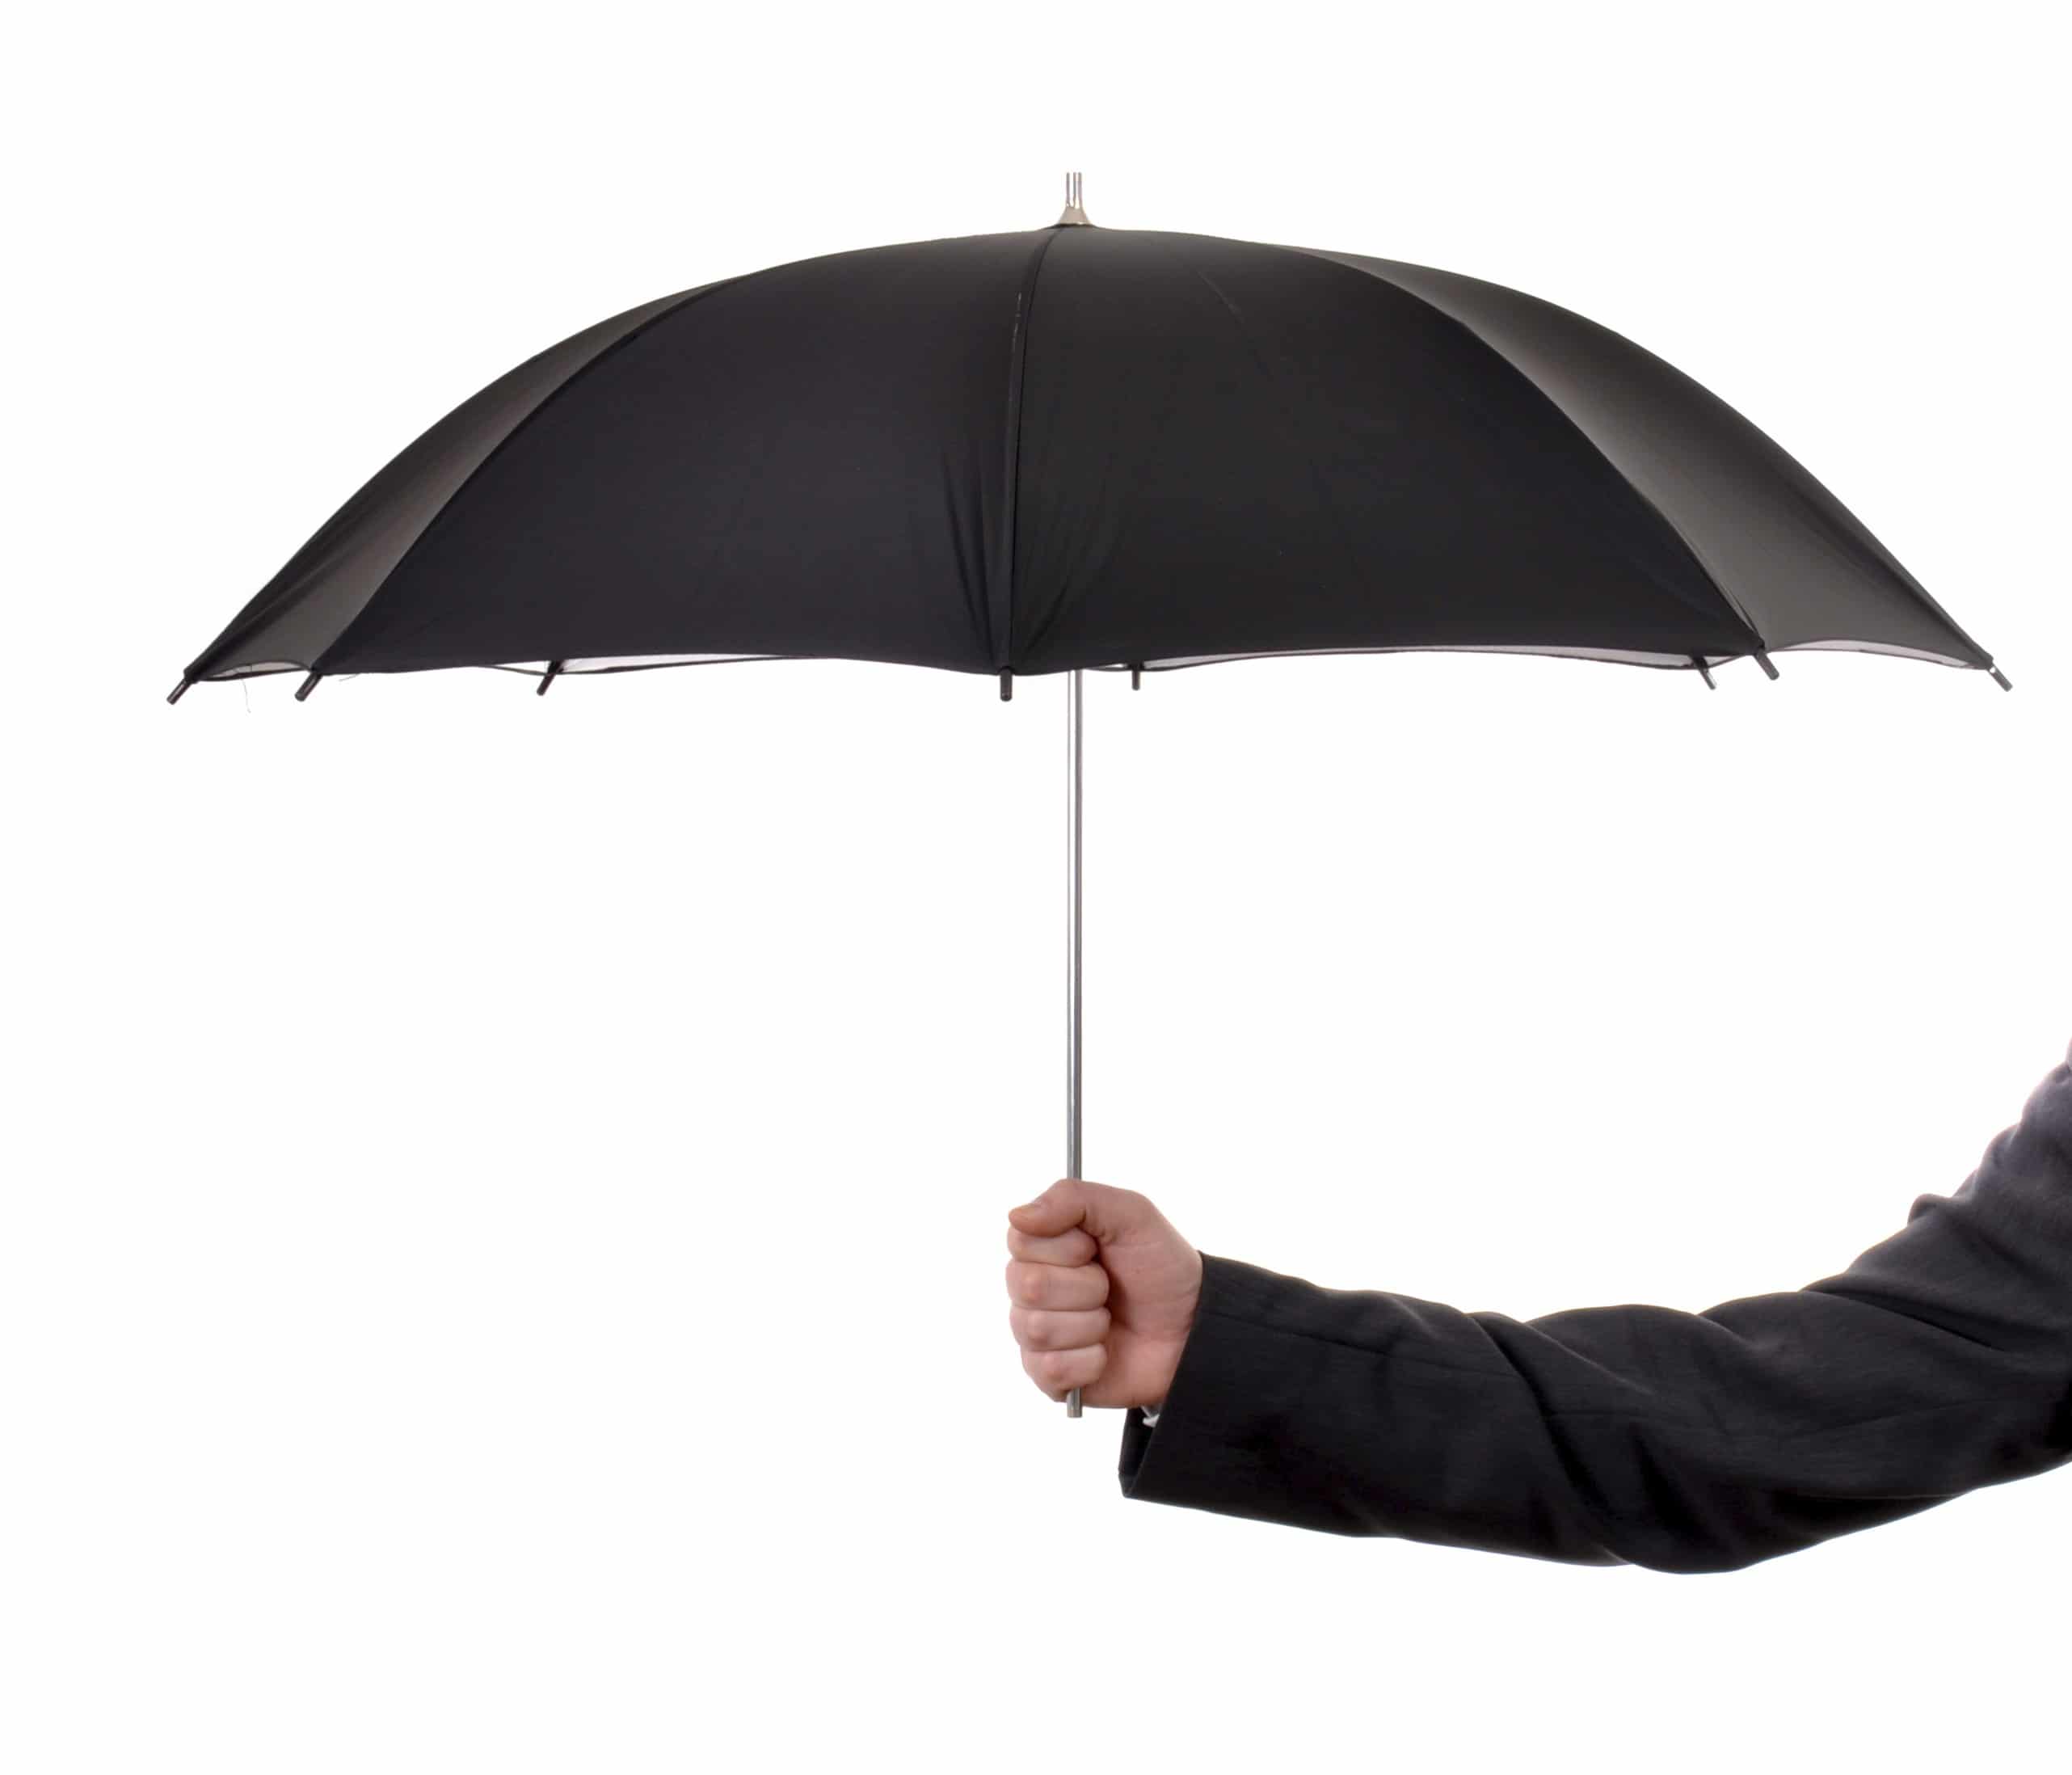 Одолжил ей зонтик. Держит зонтик. Мужчина с зонтом. Зонт в руке. Рука держит зонт.